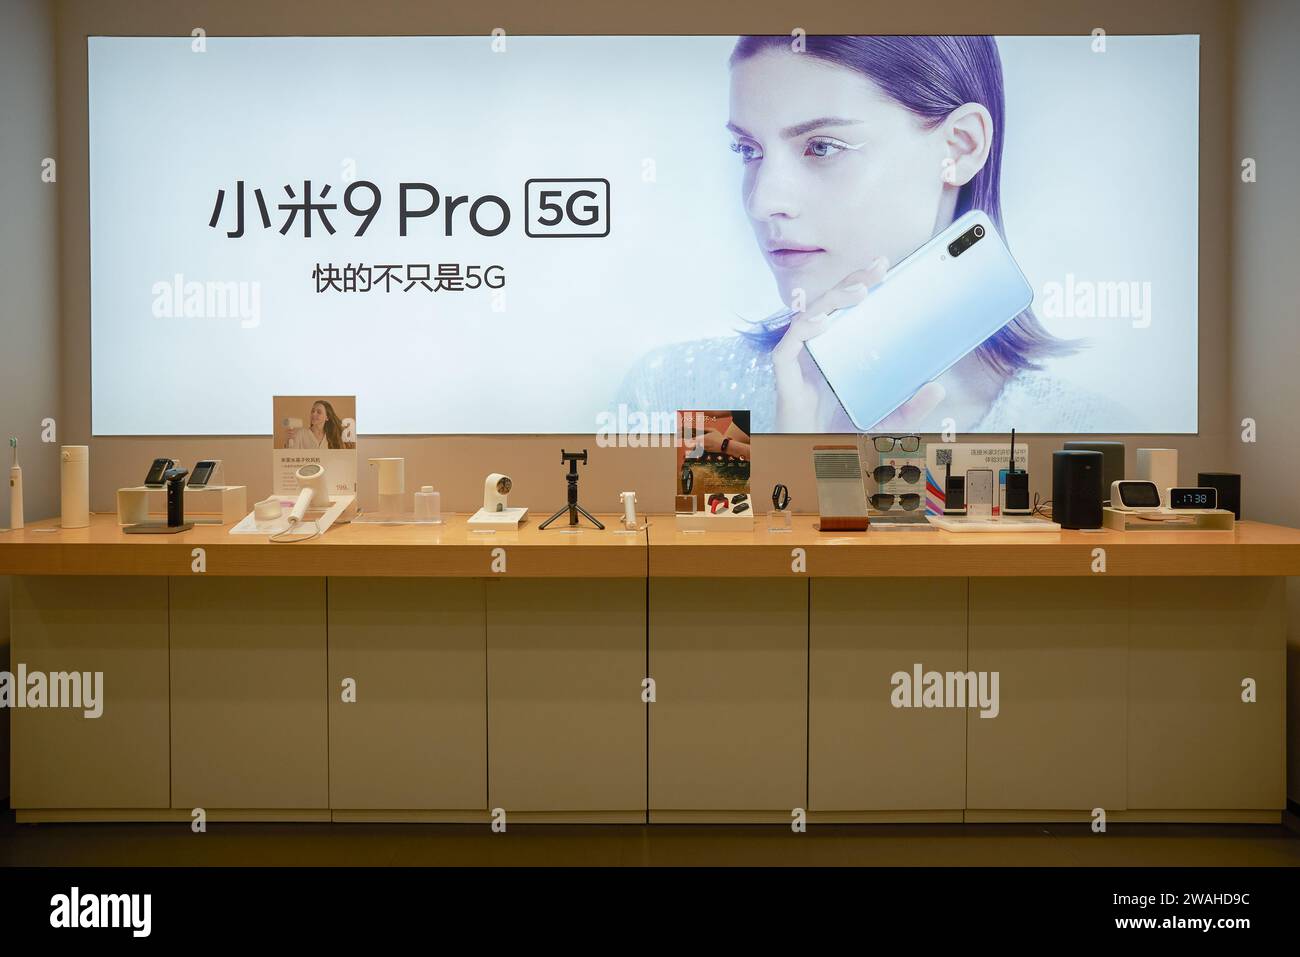 SHENZHEN, CINA - 24 NOVEMBRE 2019: Merci in mostra all'interno di un negozio Xiaomi a Shenzhen. Foto Stock